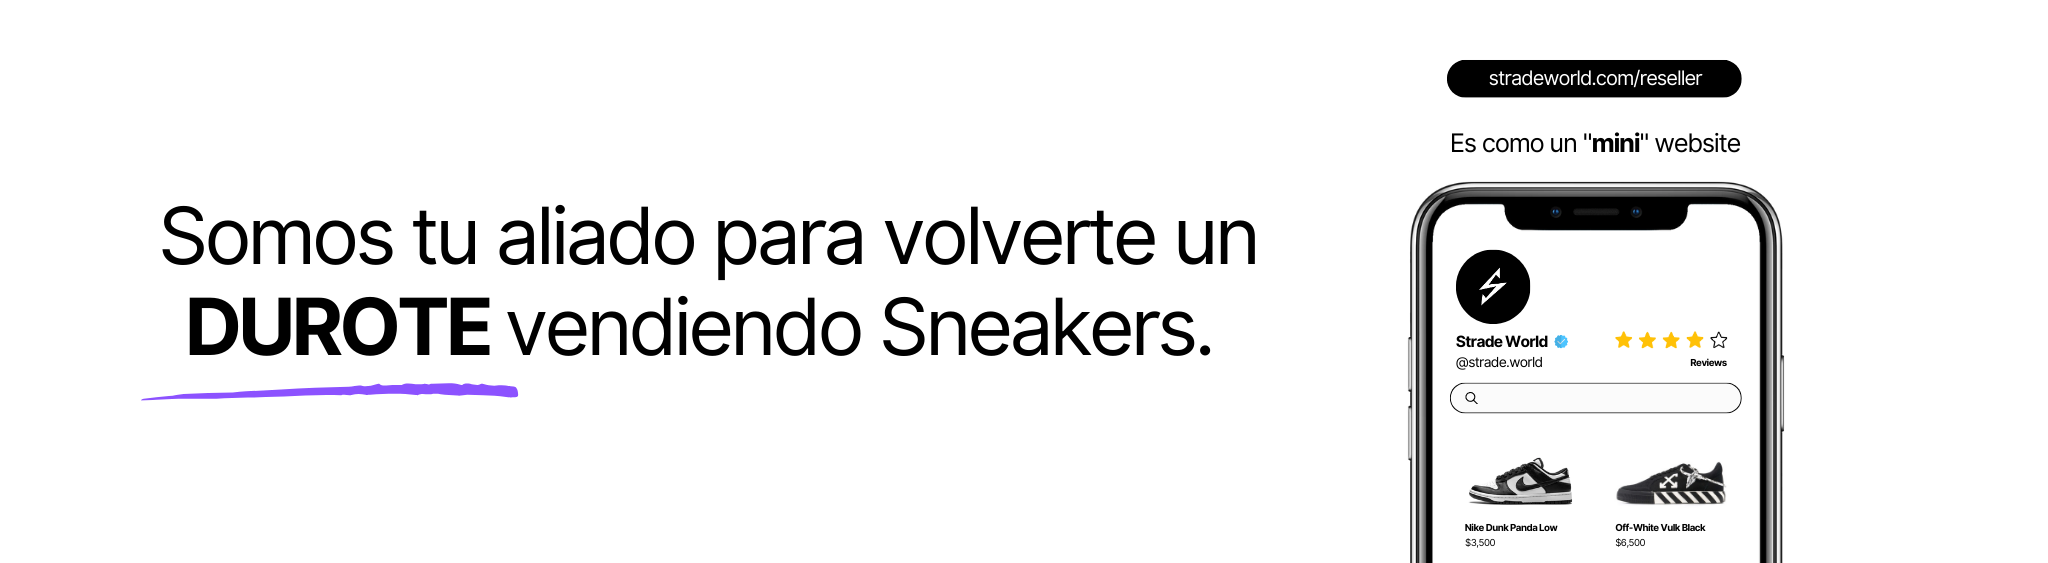 La nueva forma de Vender Sneakers en Latinoamérica